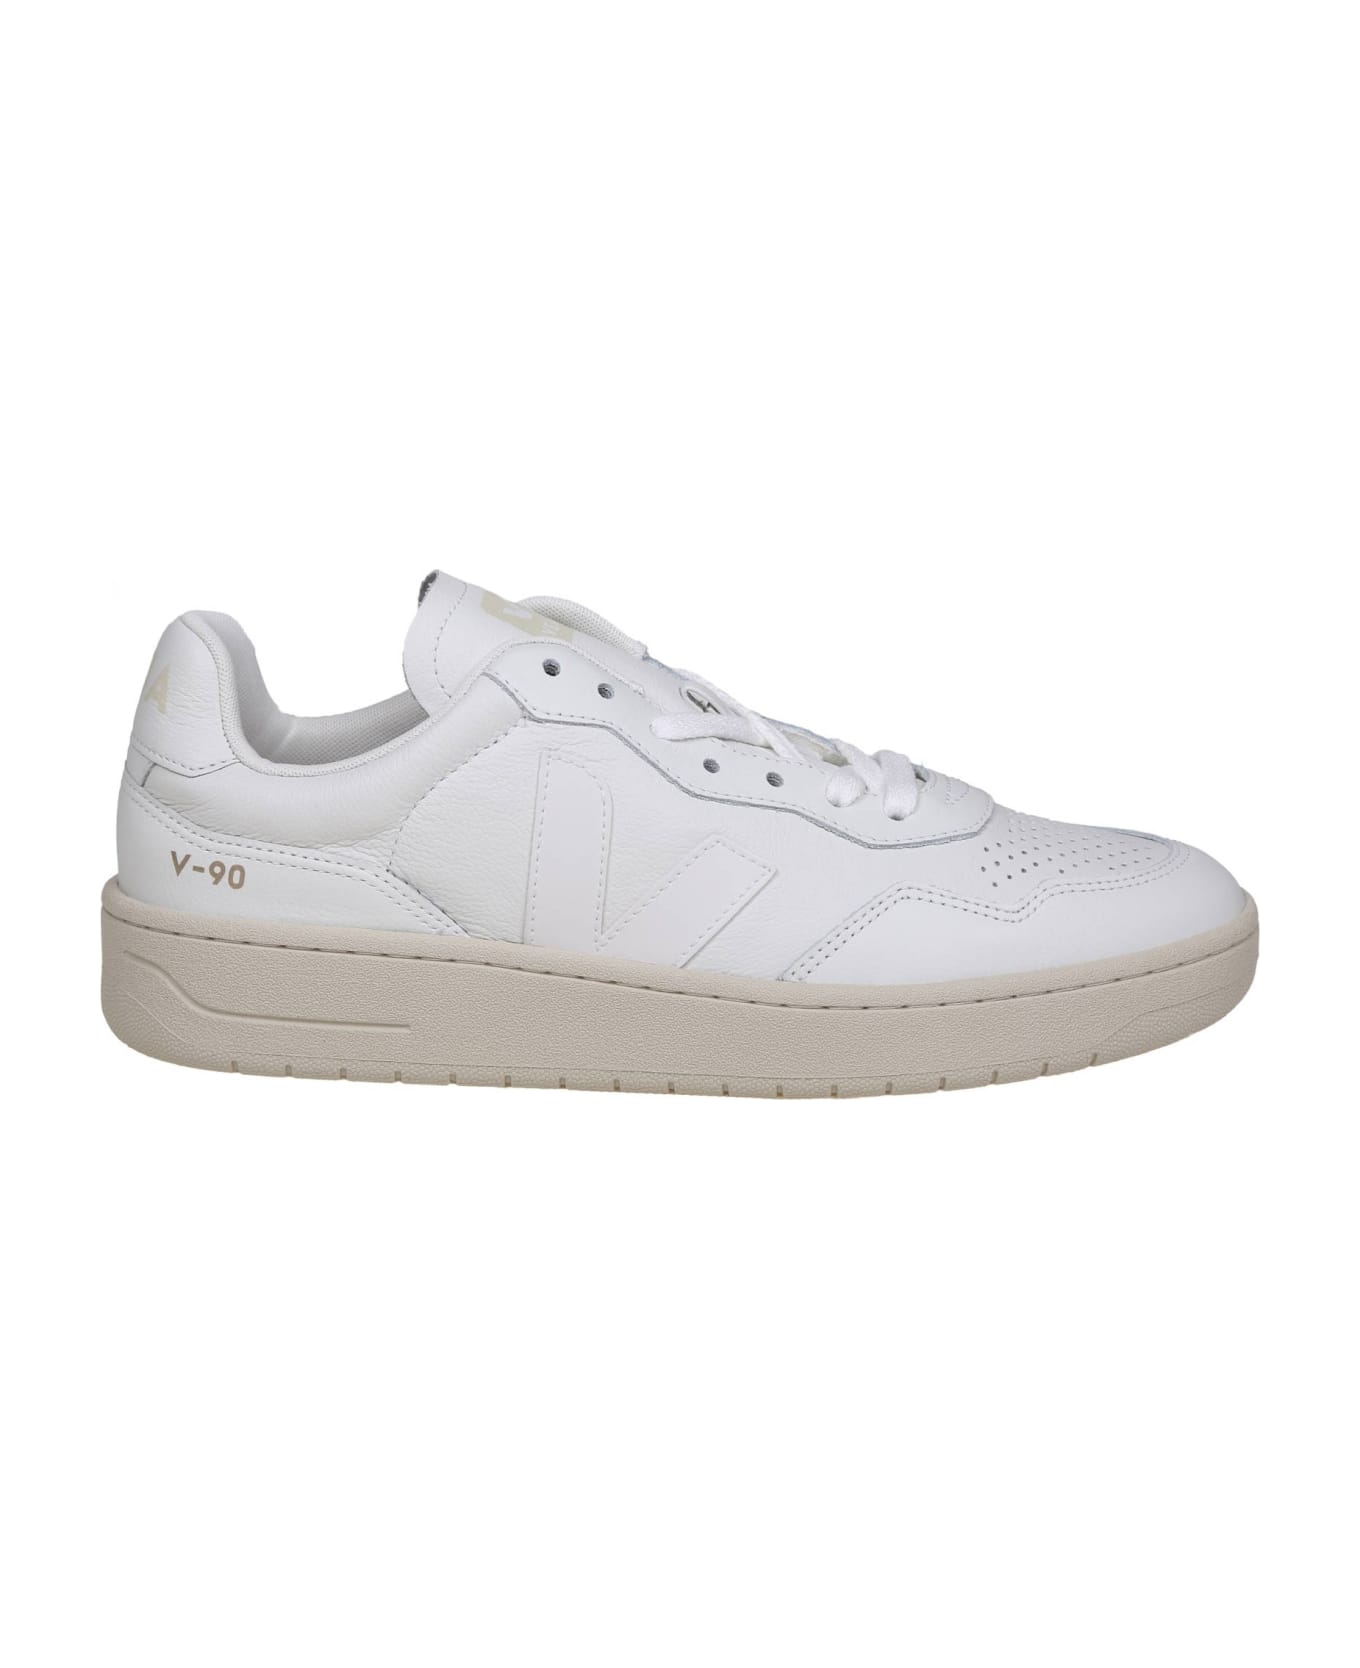 Veja V 90 Sneakers In White Leather - White